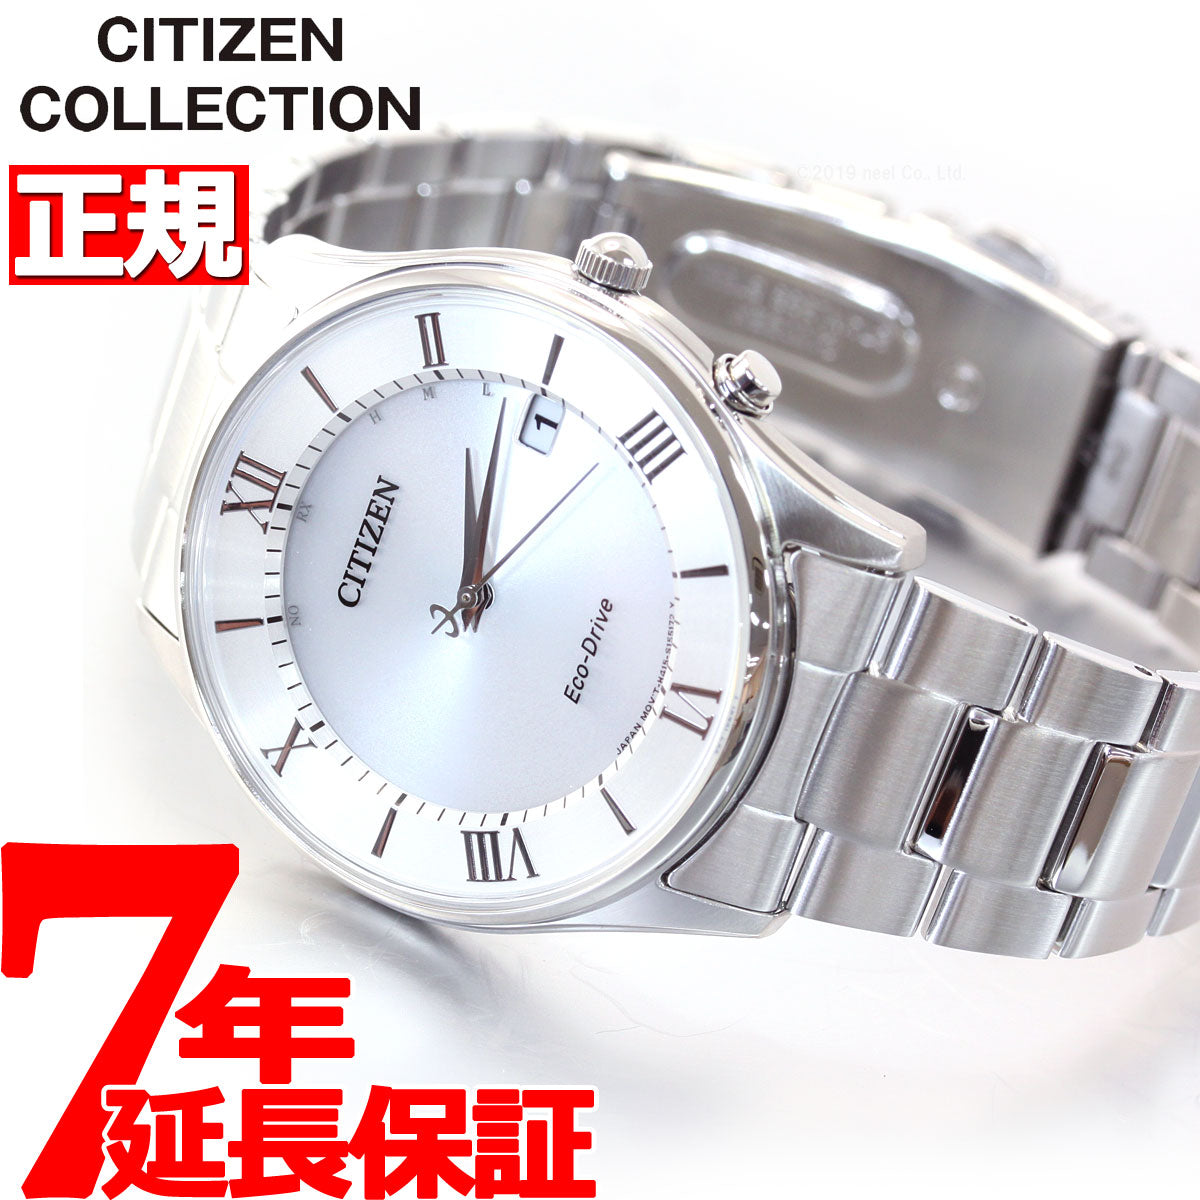 【7/27から値上げ】シチズンコレクション CITIZEN COLLECTION エコドライブ ソーラー 電波時計 腕時計 メンズ AS1060-54A